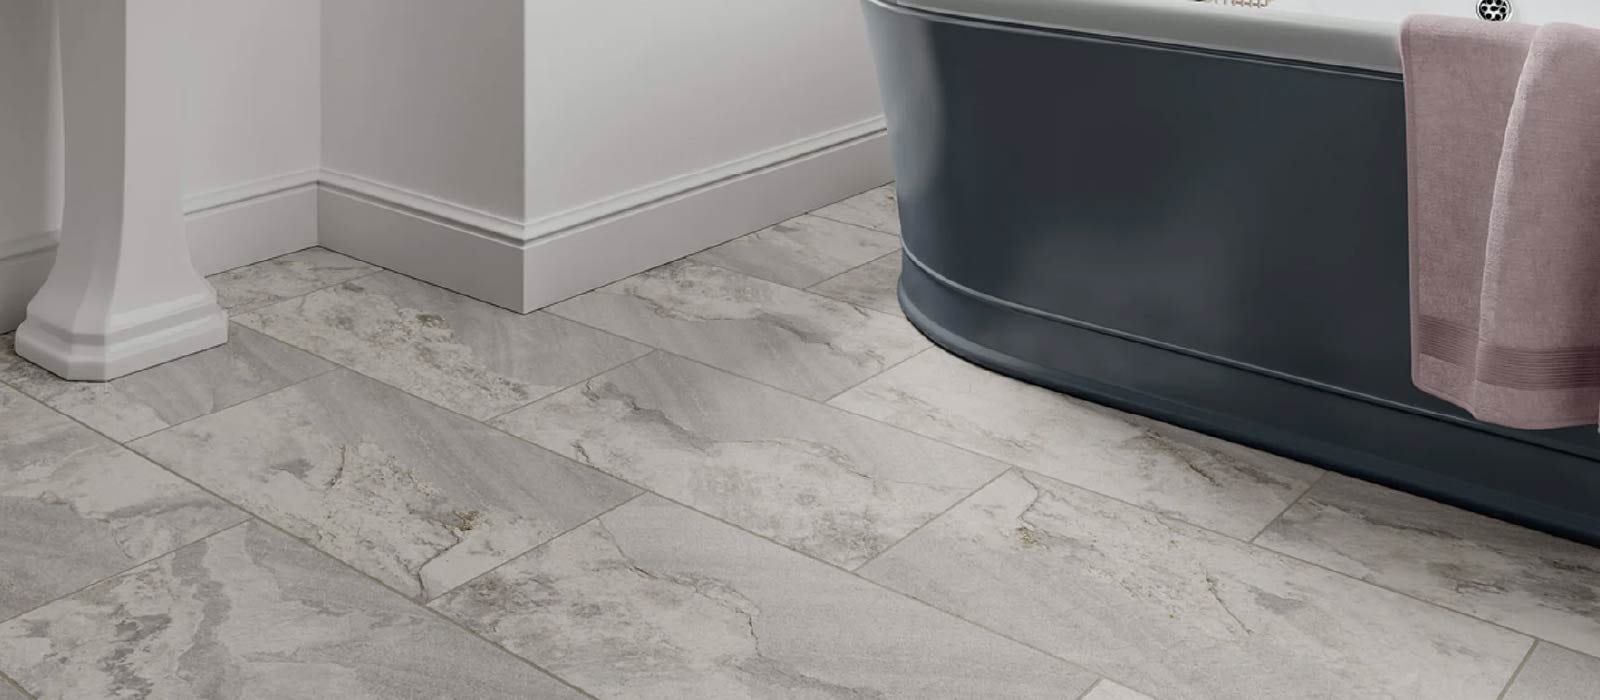 Anti Slip Tiles, Best Tile For Bathroom Floor Non Slip